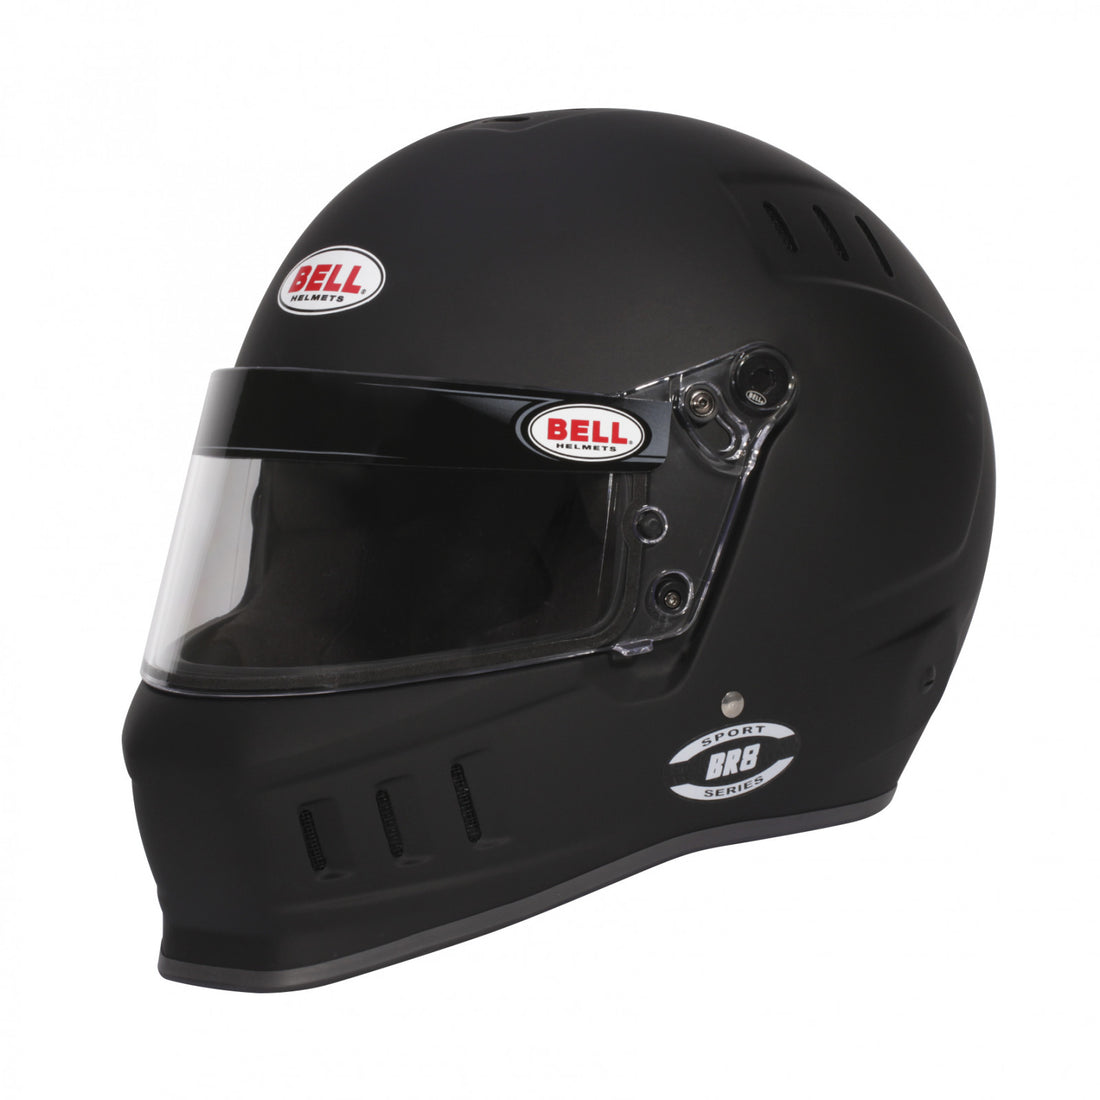 Bell BR8 Matte Black Helmet Size Medium